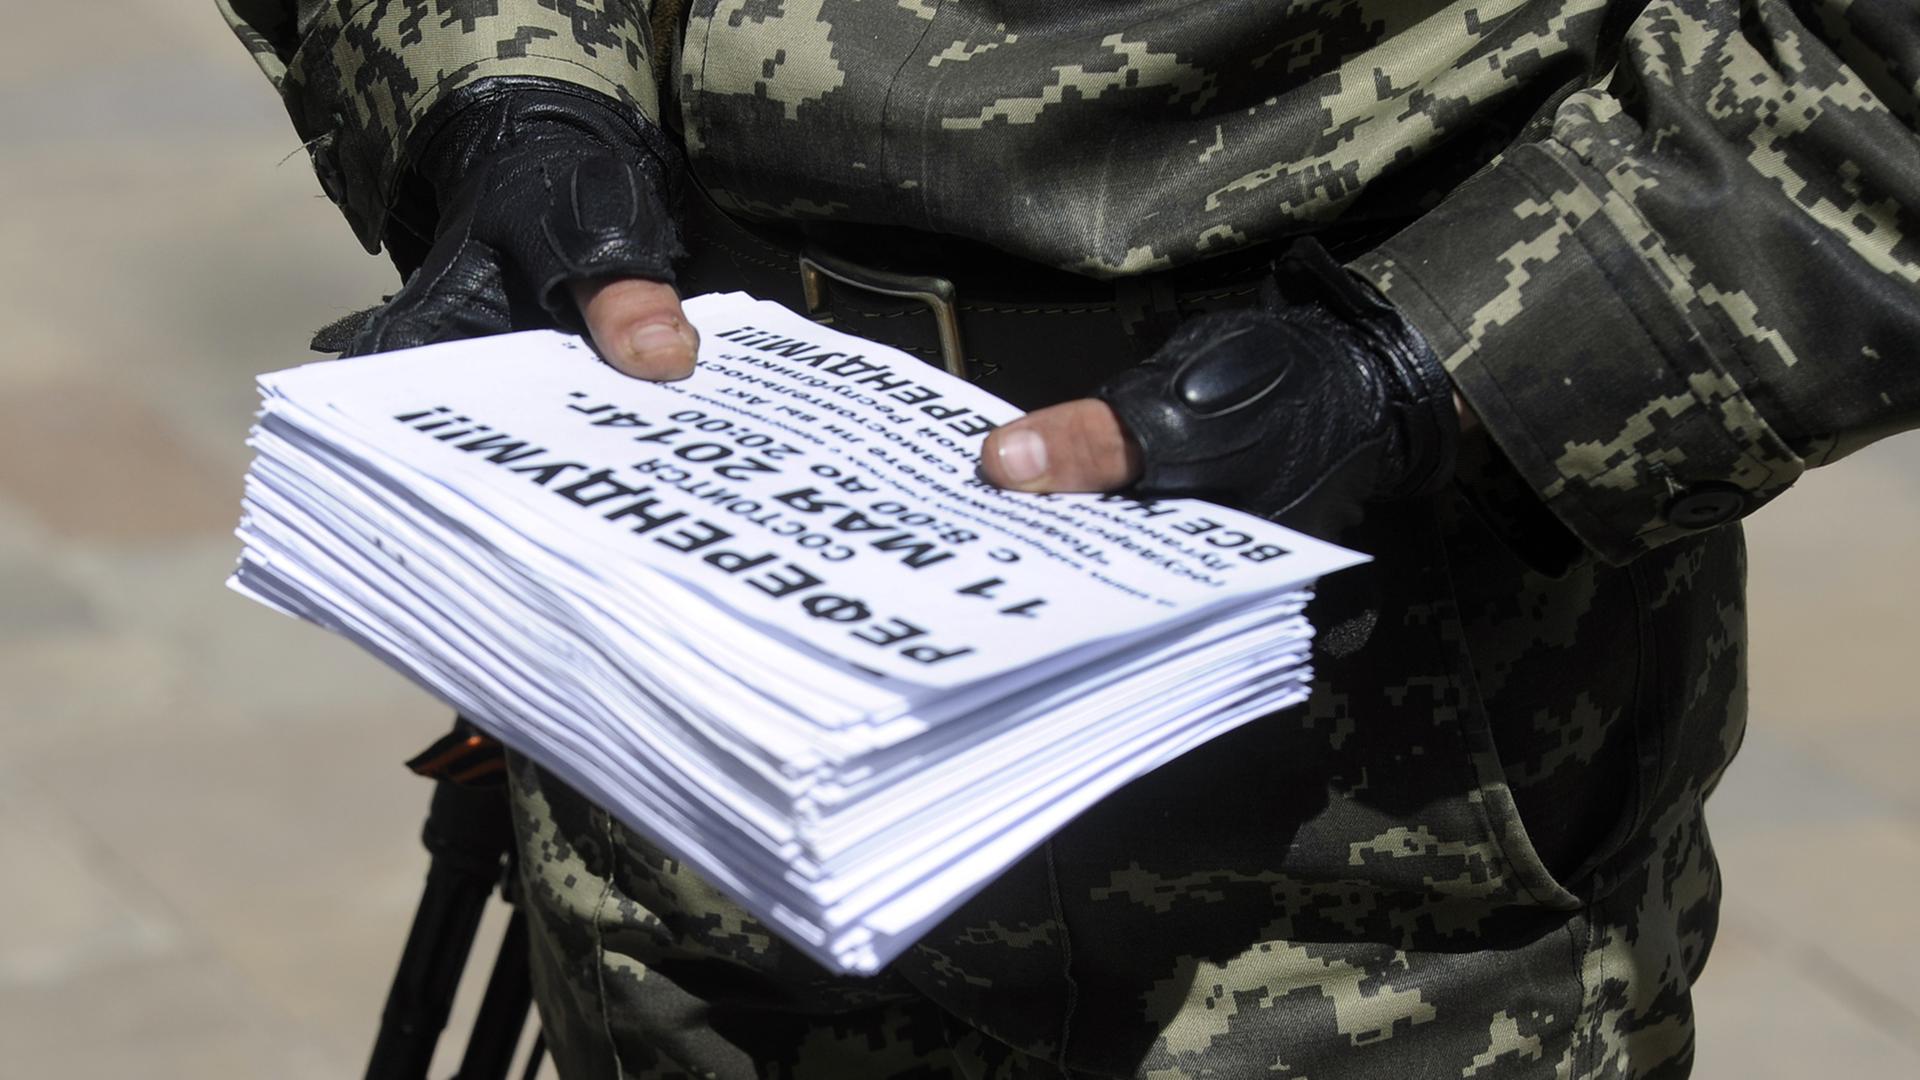 Ein Mitglied der sogenannten Volksarmee in der Ostukraine hält Einladungen zum Referendum über die Unabhängigkeit der Regionen Donezk und Lugansk in den Händen.